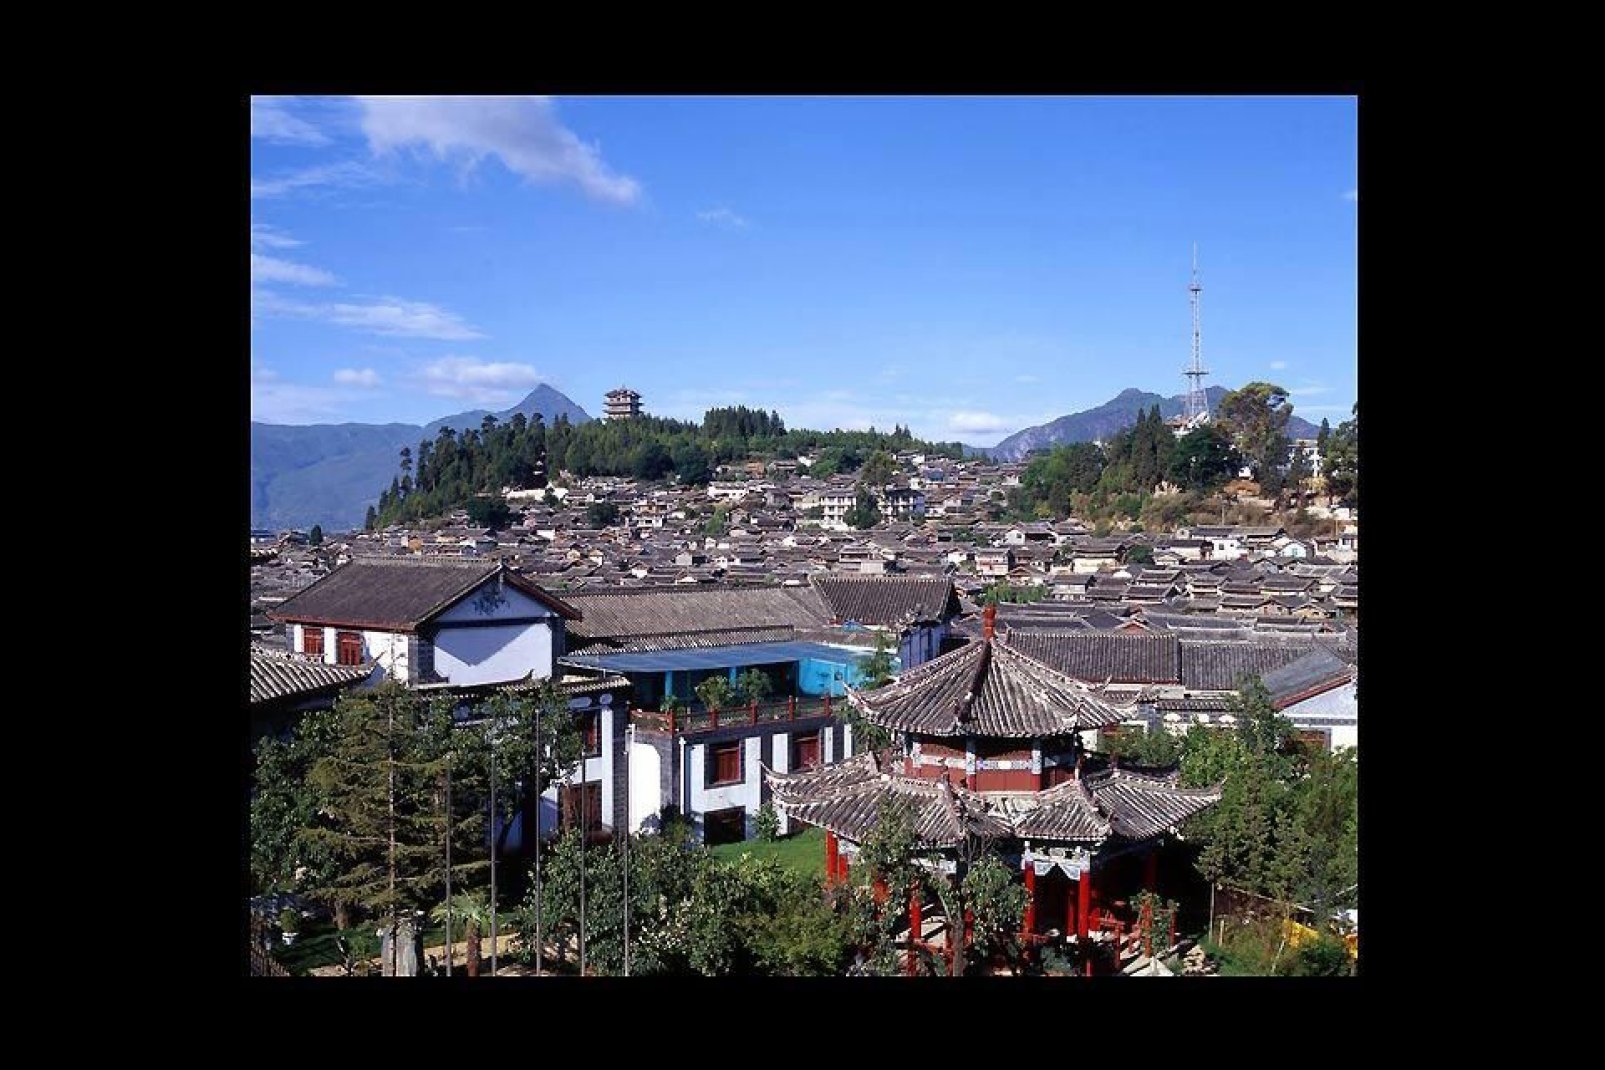 La città di Lijiang, nello Yunnan, è abitata principalmente da